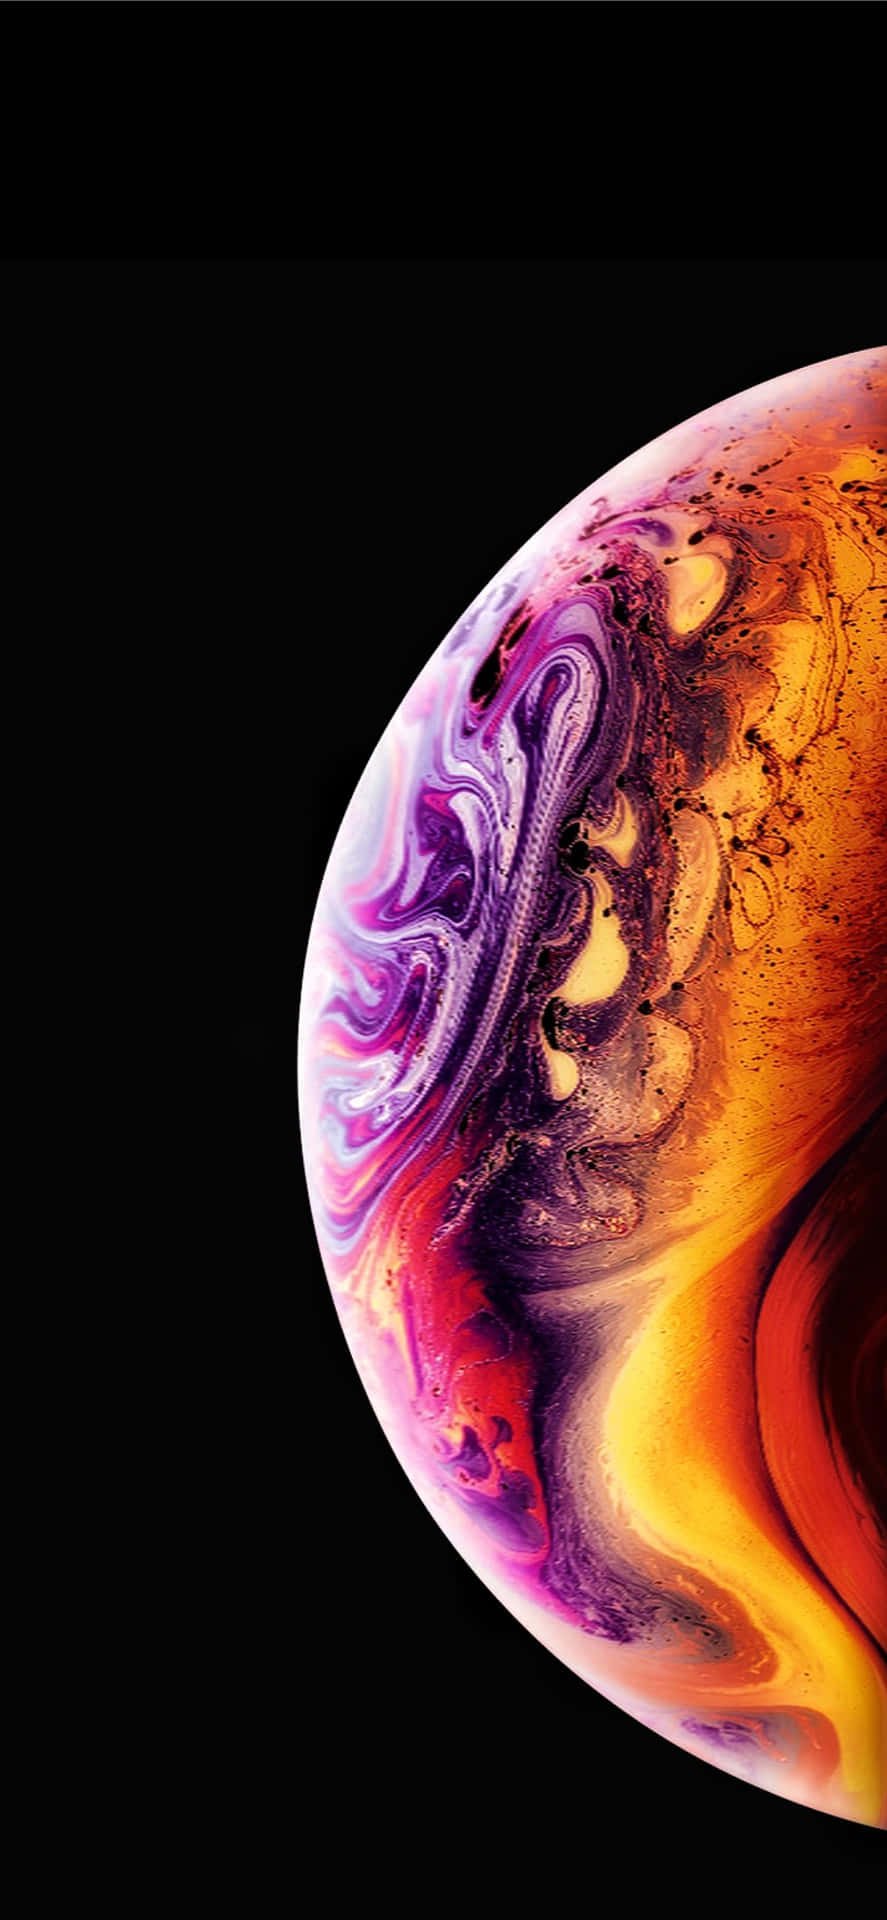 Unaimagen De Un Iphone Xs Max De Apple Con Un Remolino De Colores